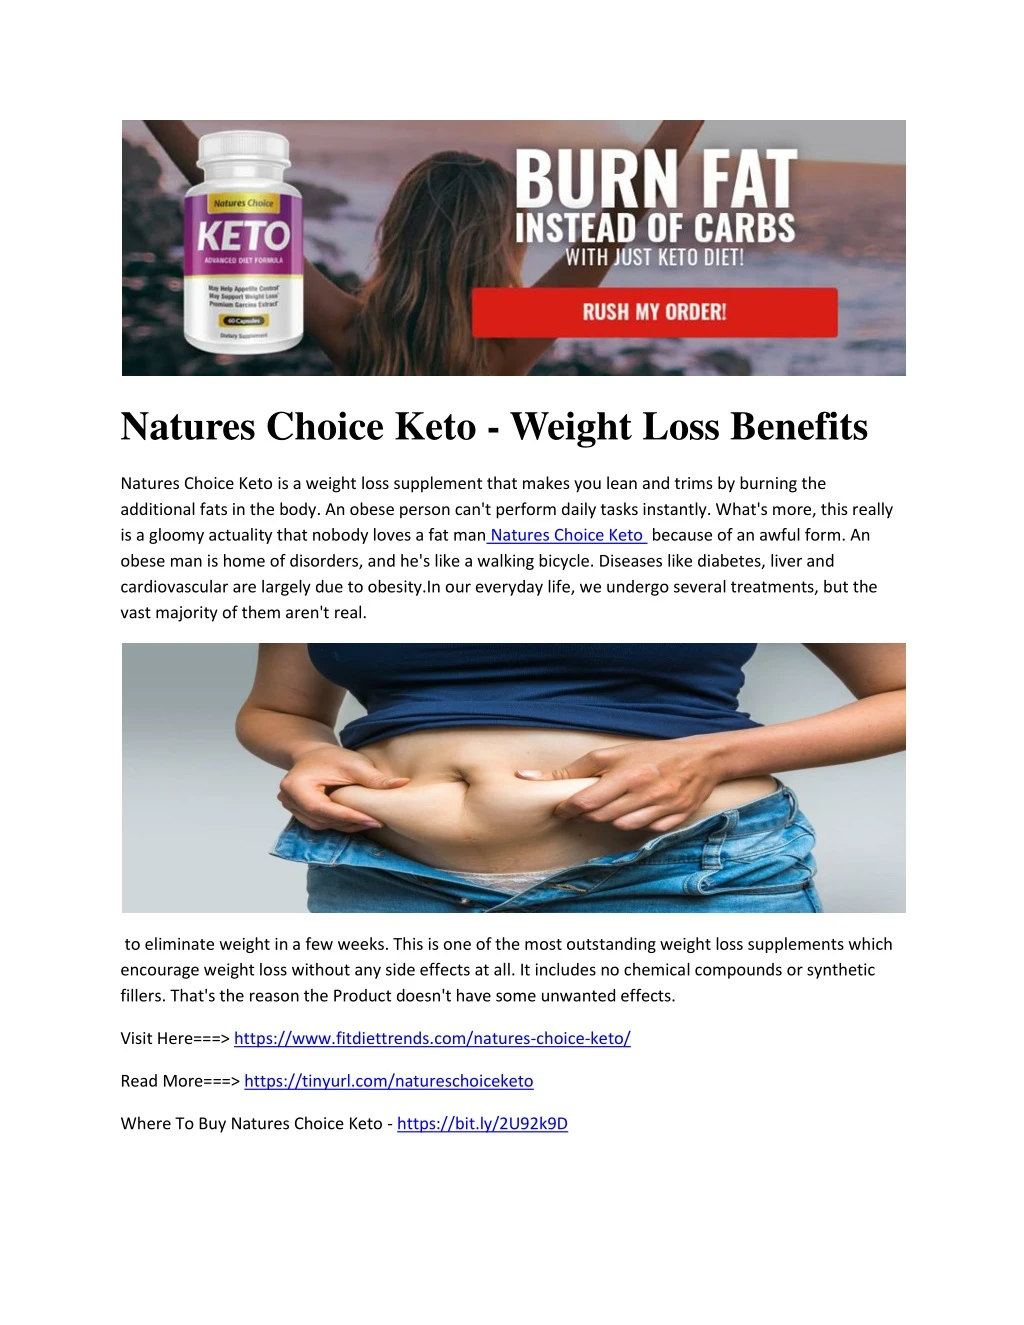 natures choice keto weight loss benefits